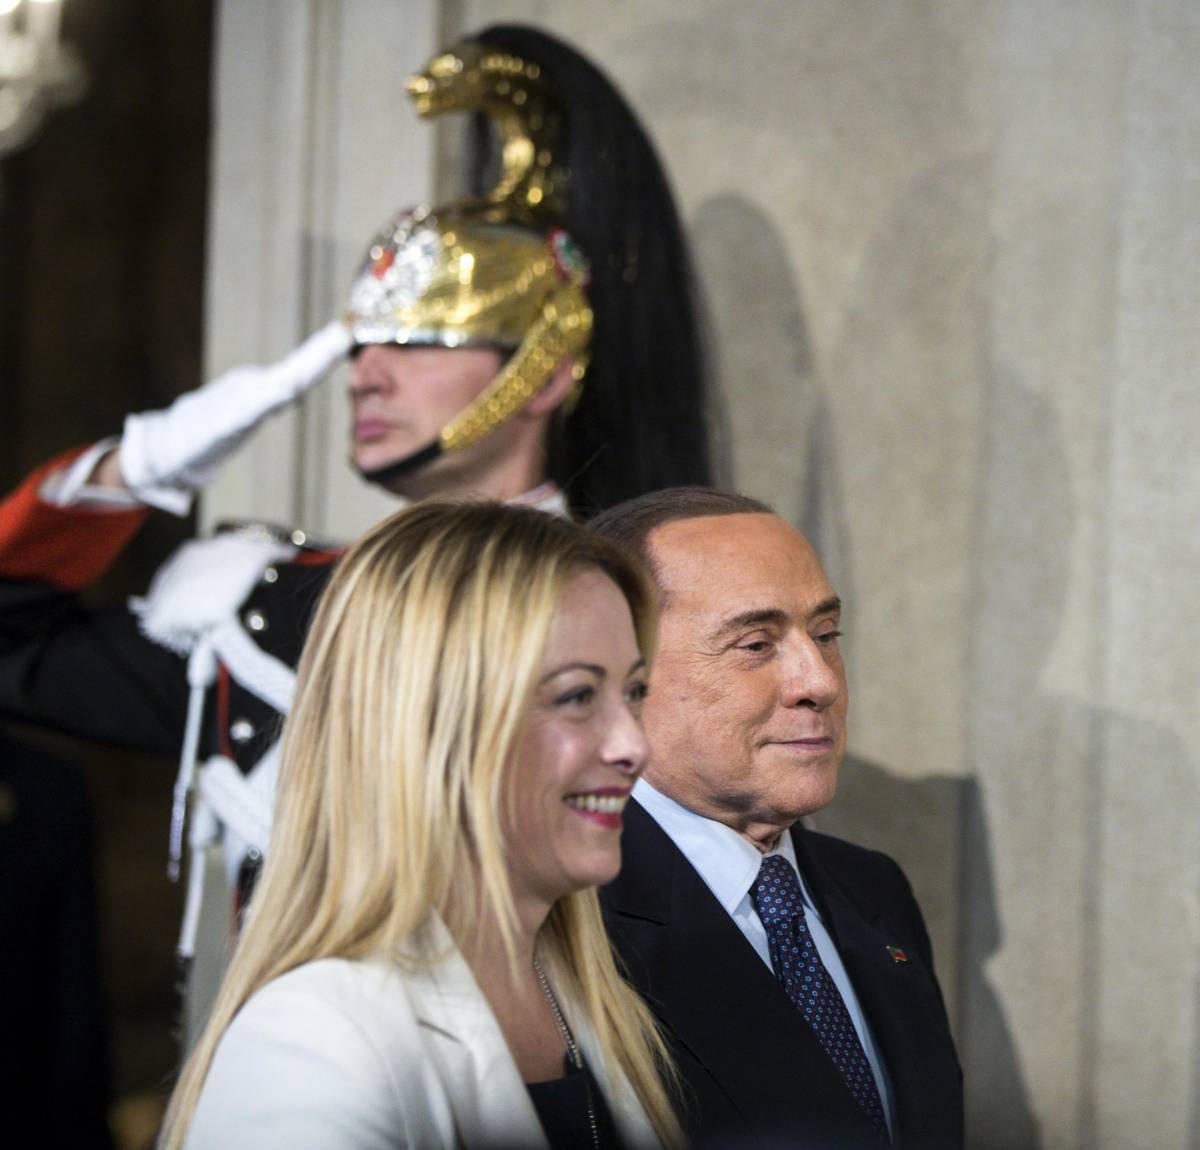 Governo in fretta: Meloni-Berlusconi si incontrano già oggi a Roma. "Nessuna crisi"